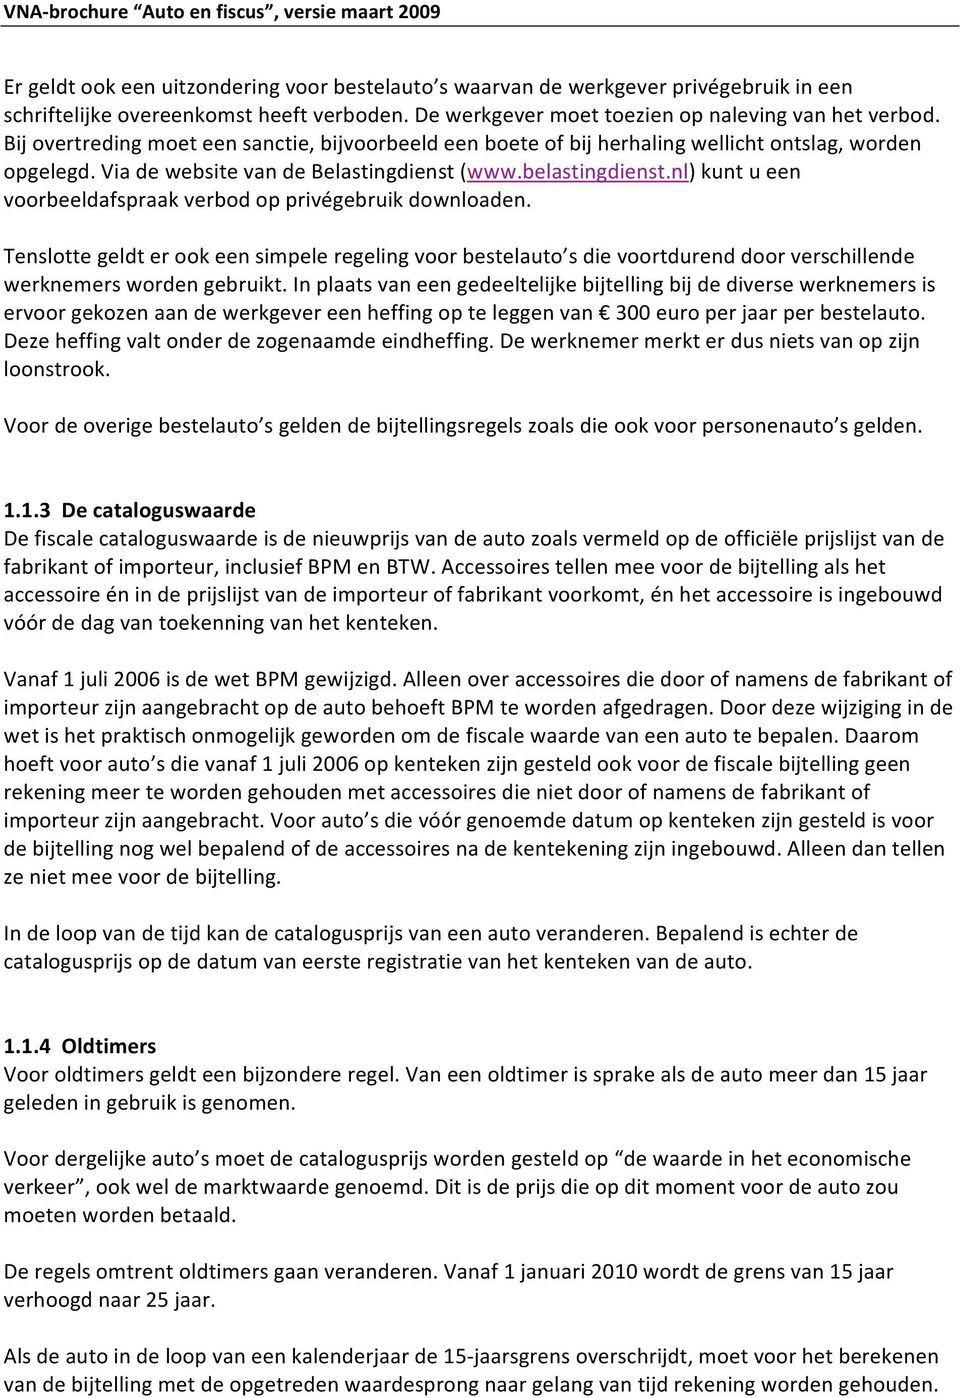 www.belastingdienst.nl)kuntueen voorbeeldafspraakverbodopprivégebruikdownloaden. Tenslottegeldterookeensimpeleregelingvoorbestelauto sdievoortdurenddoorverschillende werknemerswordengebruikt.